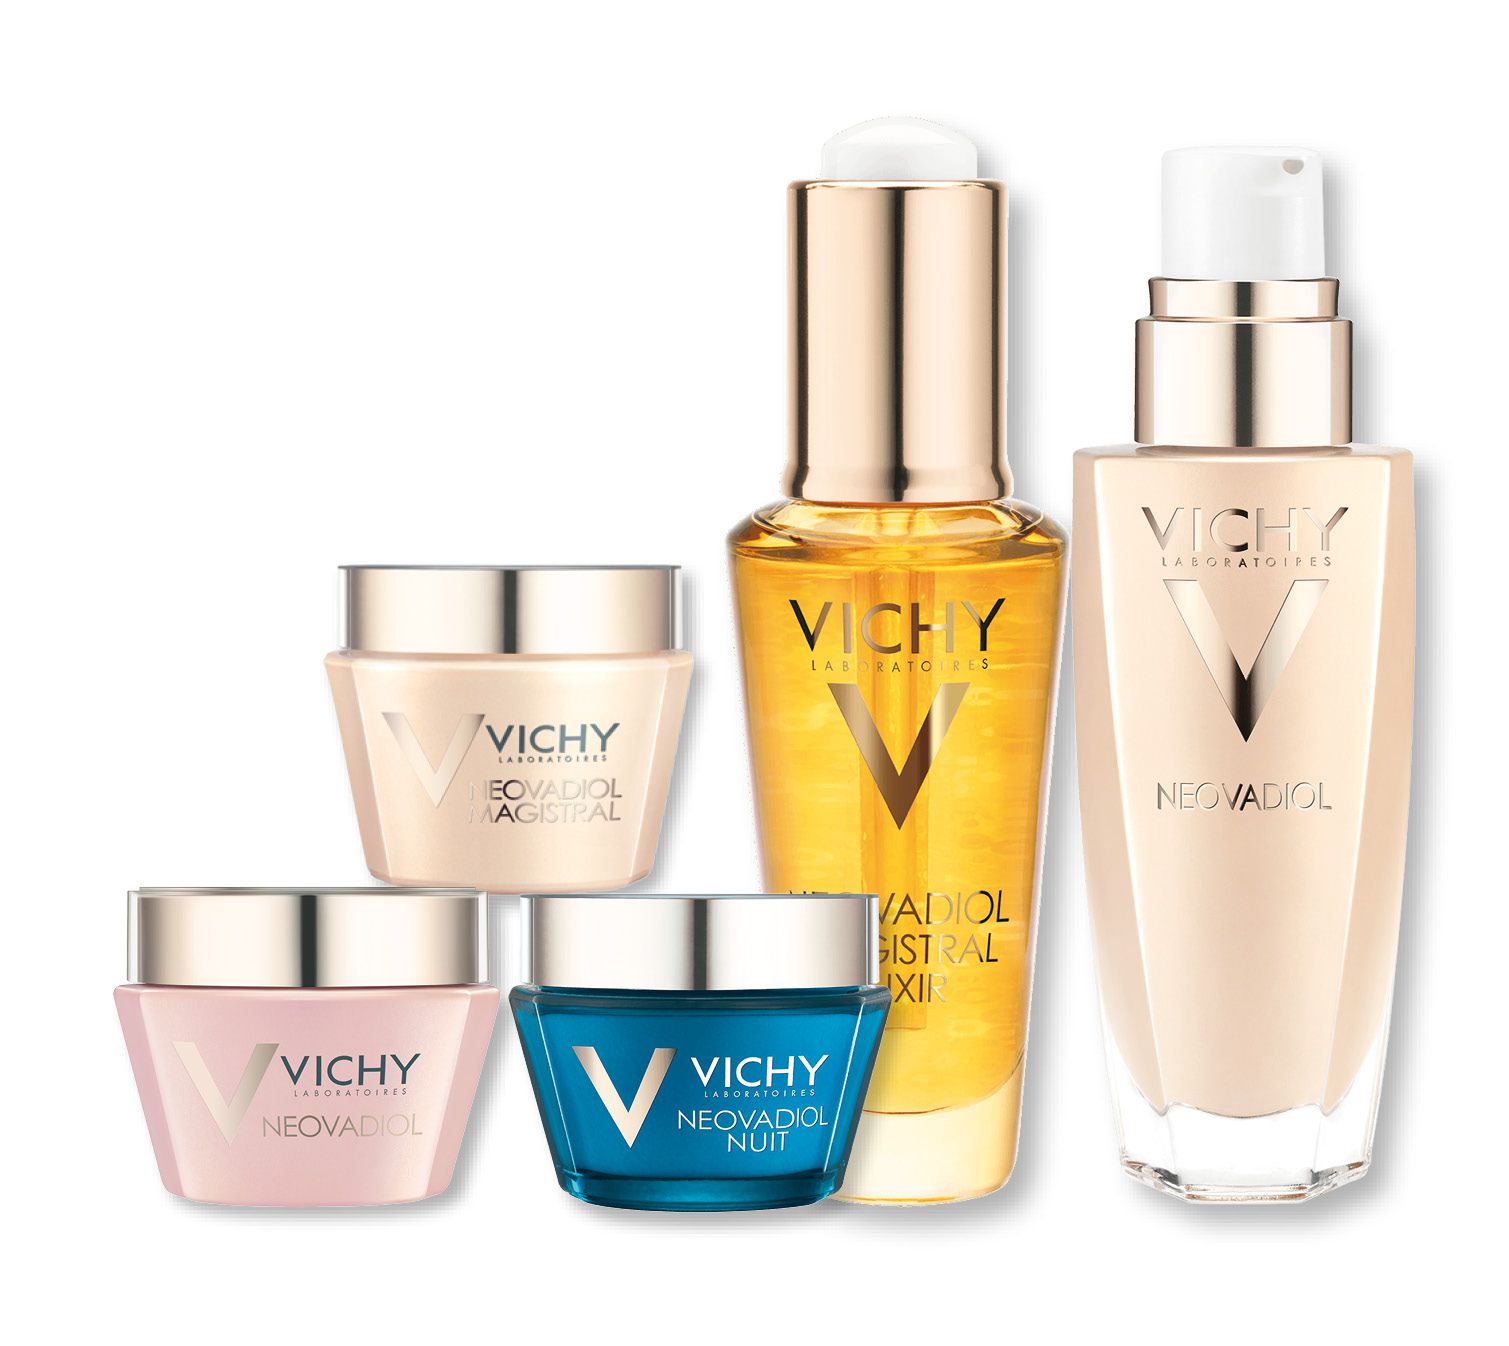 Vichy là thương hiệu của nước nào?